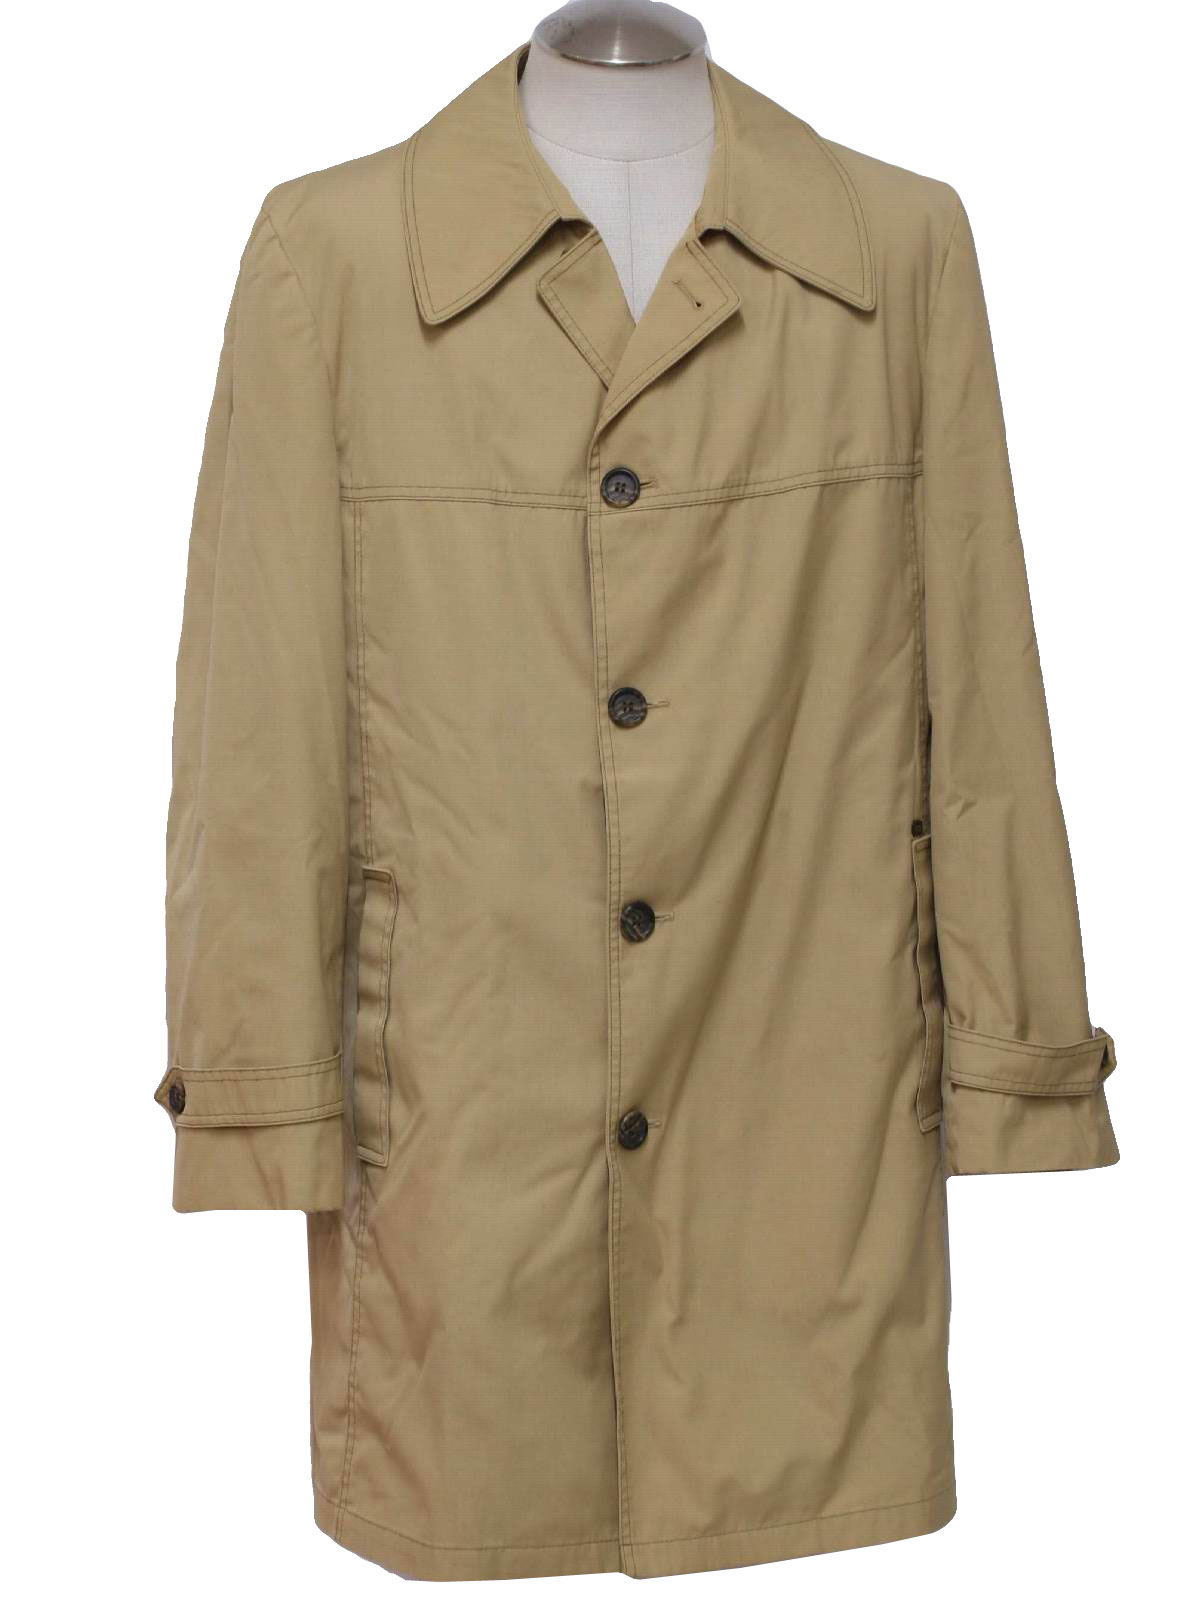 1970's Jacket (London Fog): 70s -London Fog- Mens khaki tan cotton ...